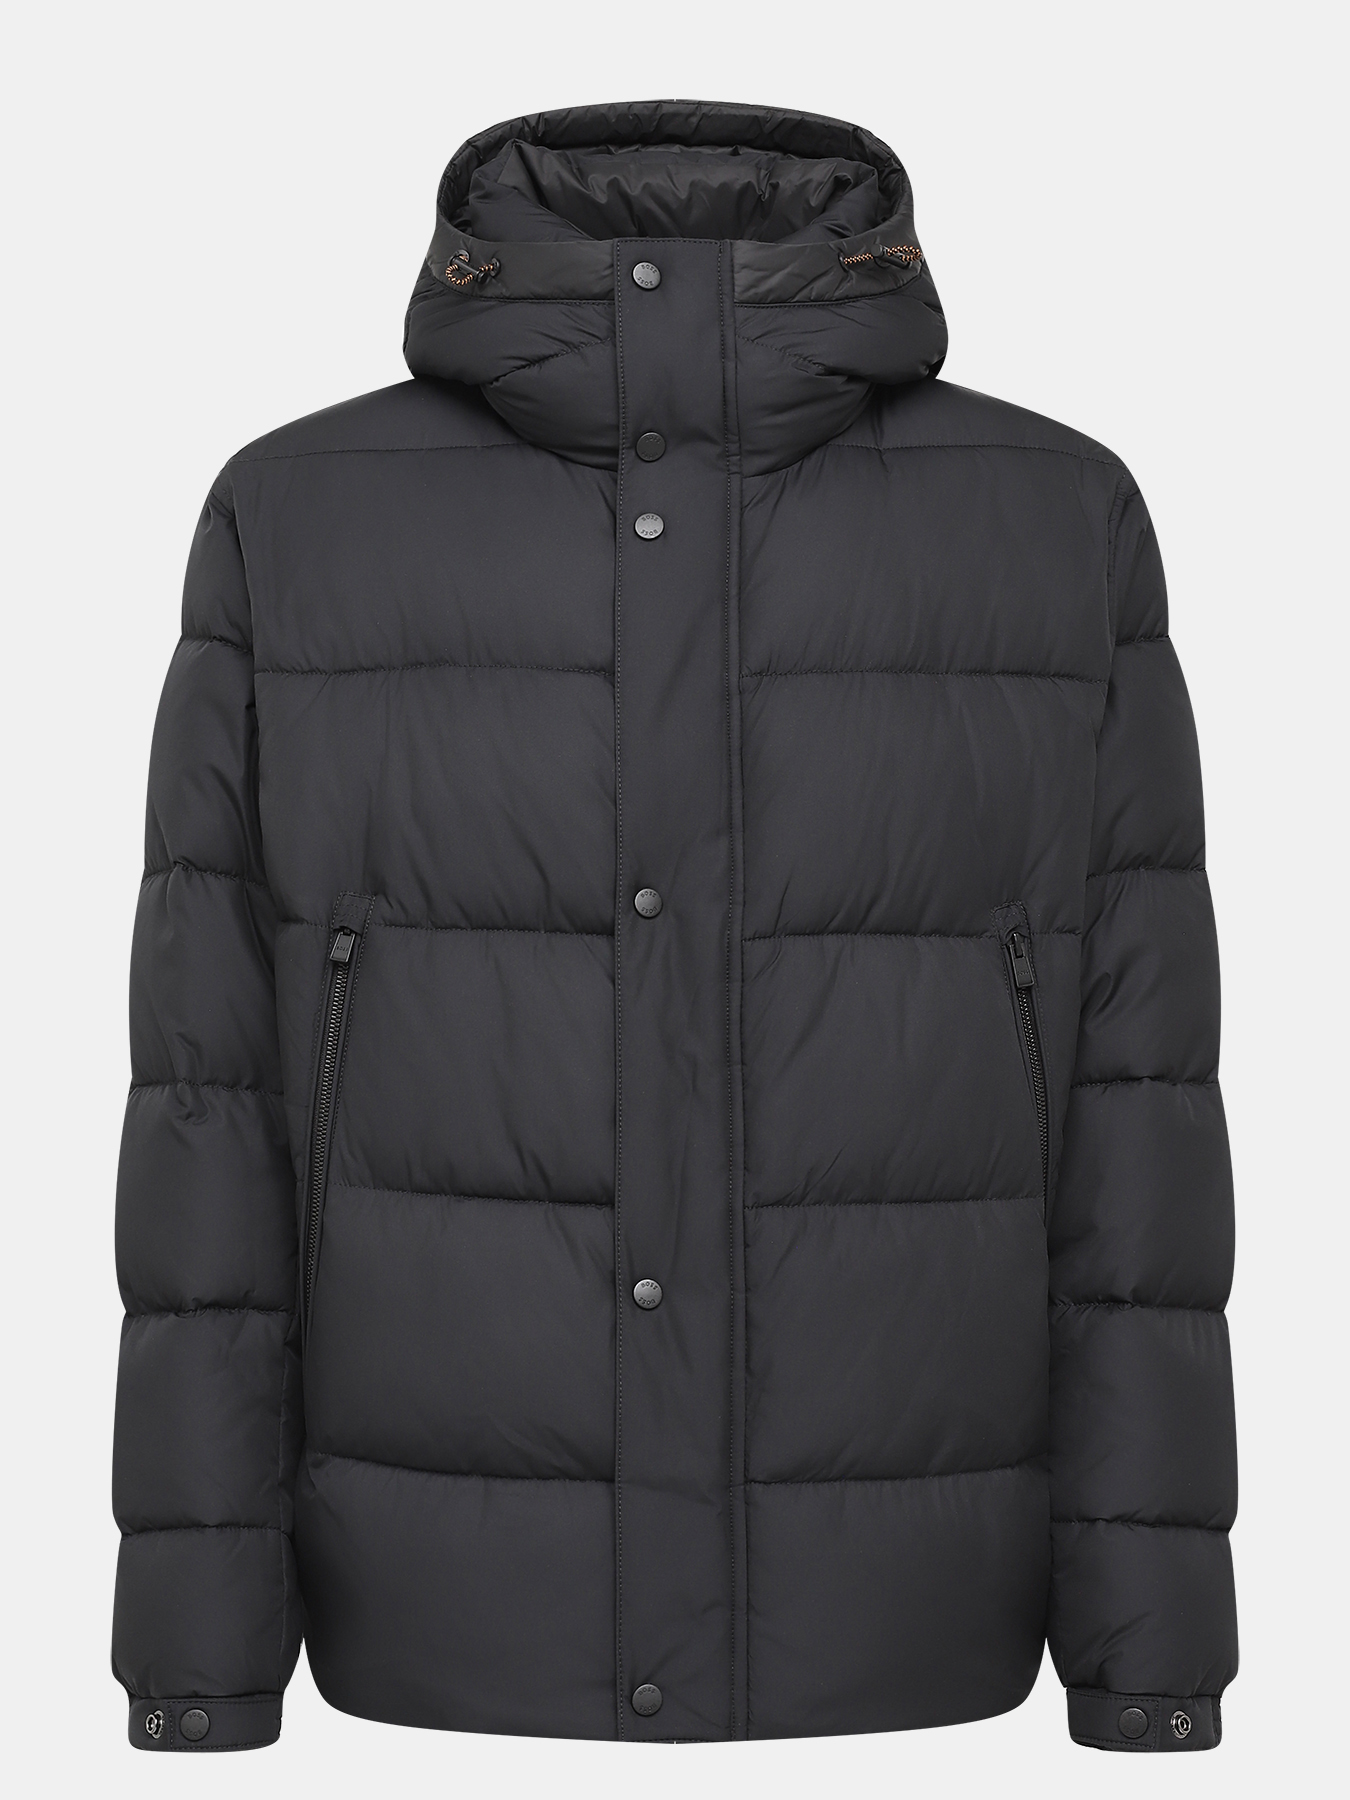 Куртка Omaris BOSS 426042-030, цвет черный, размер 58